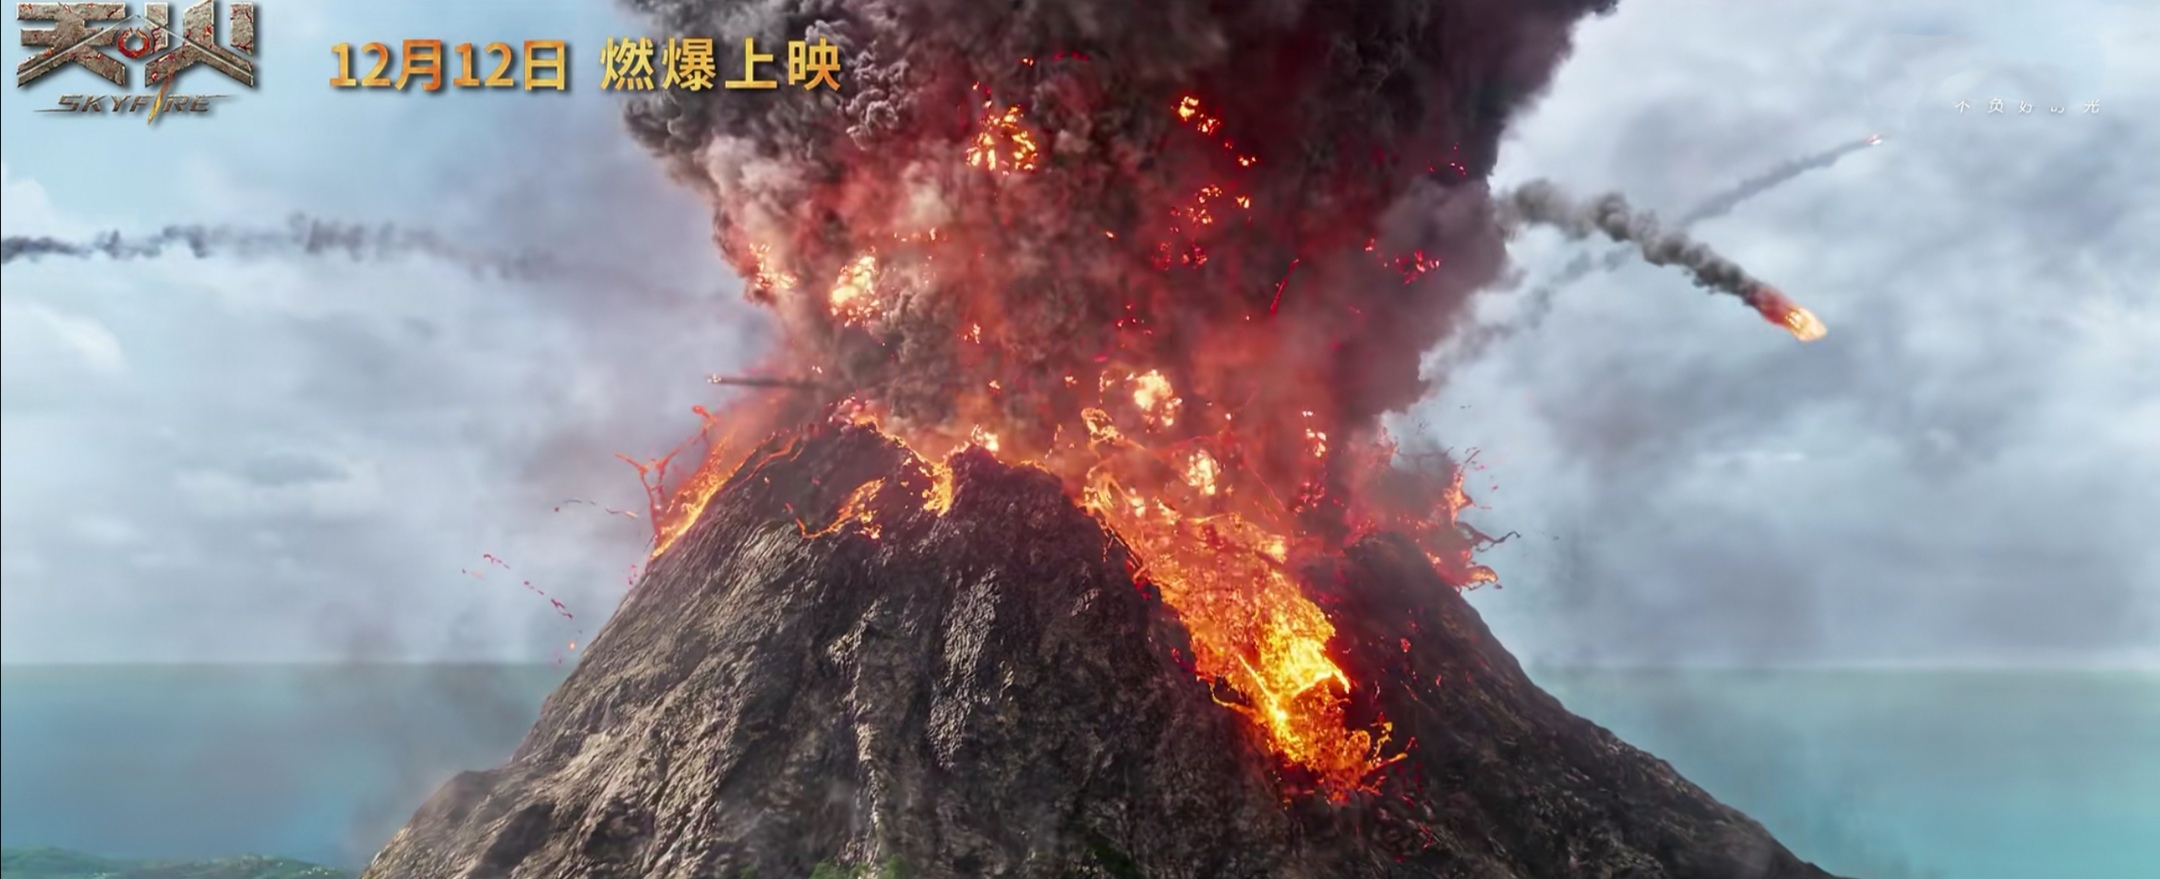 从此前曝光多款预告中可以发现,《天火》中火山爆发的特效场景无比